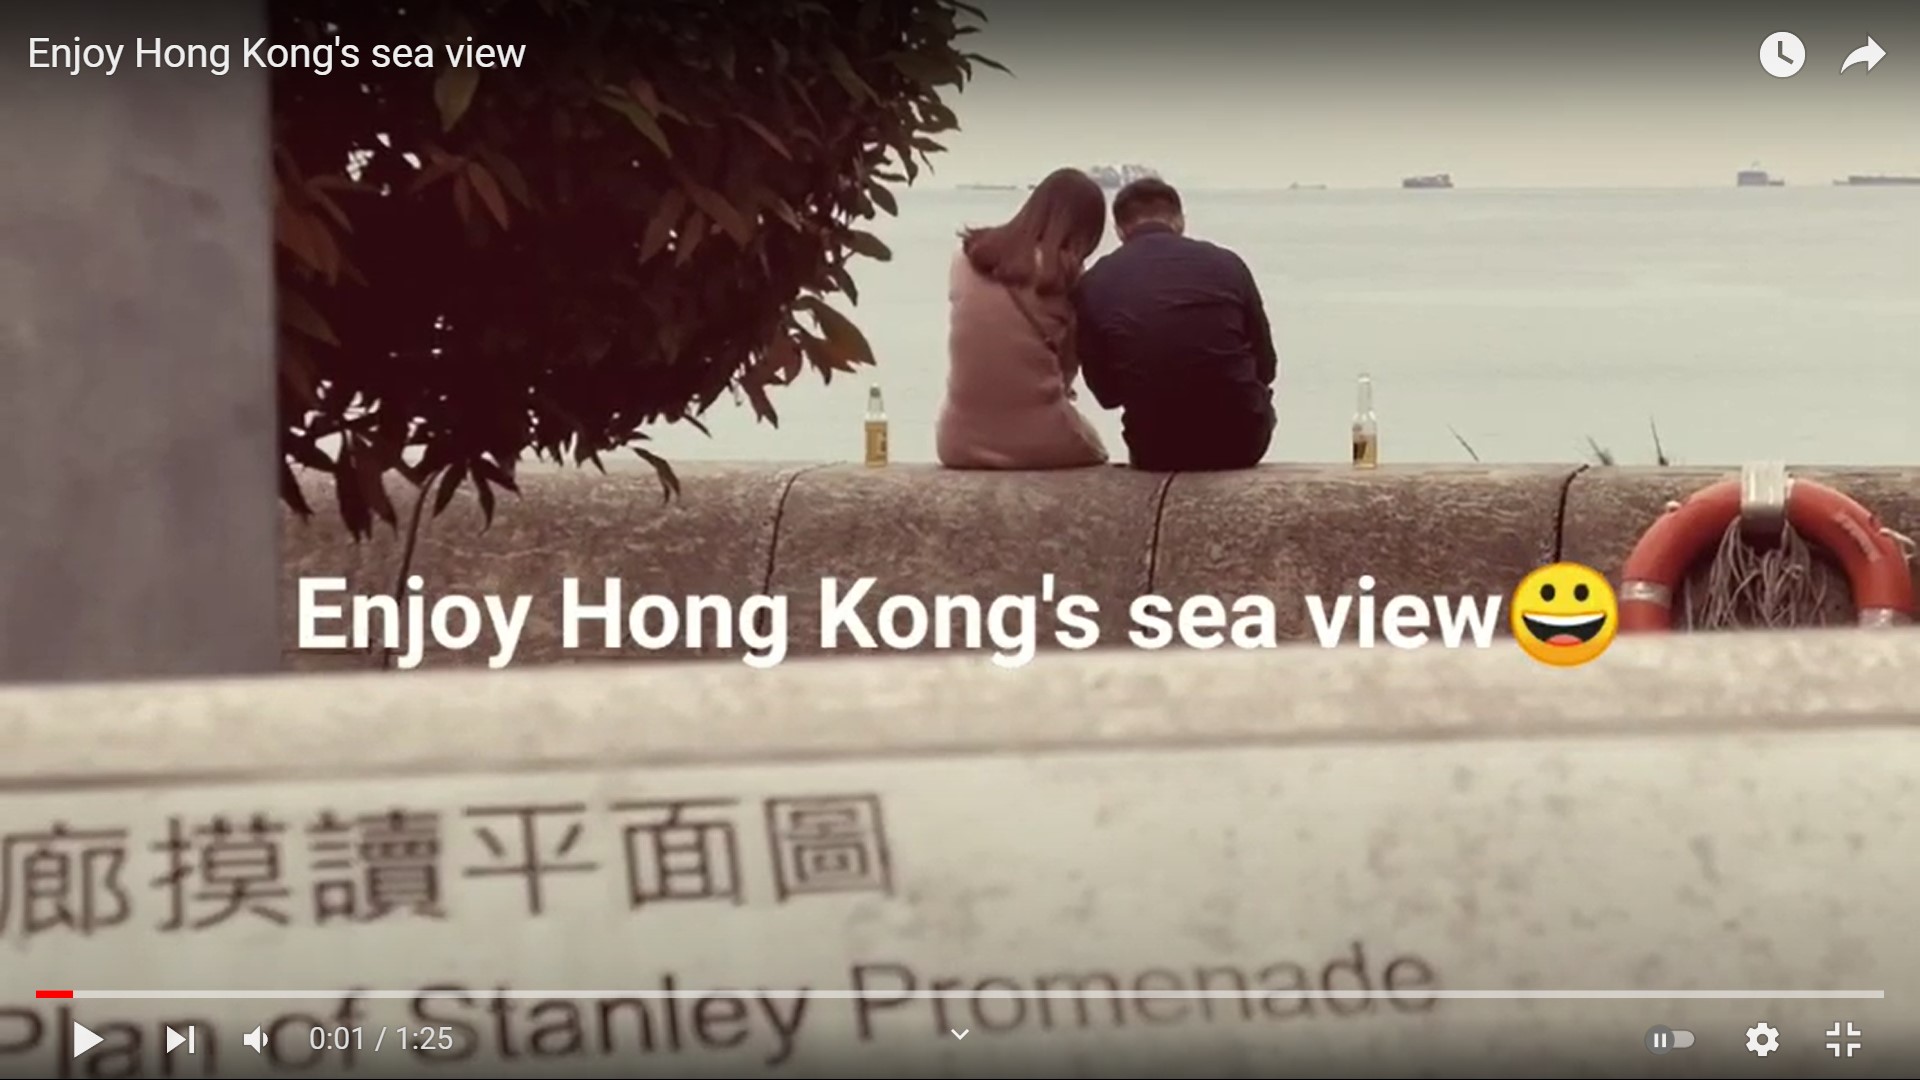 Frank’s “Enjoy Hong Kong's sea view” snapshots video